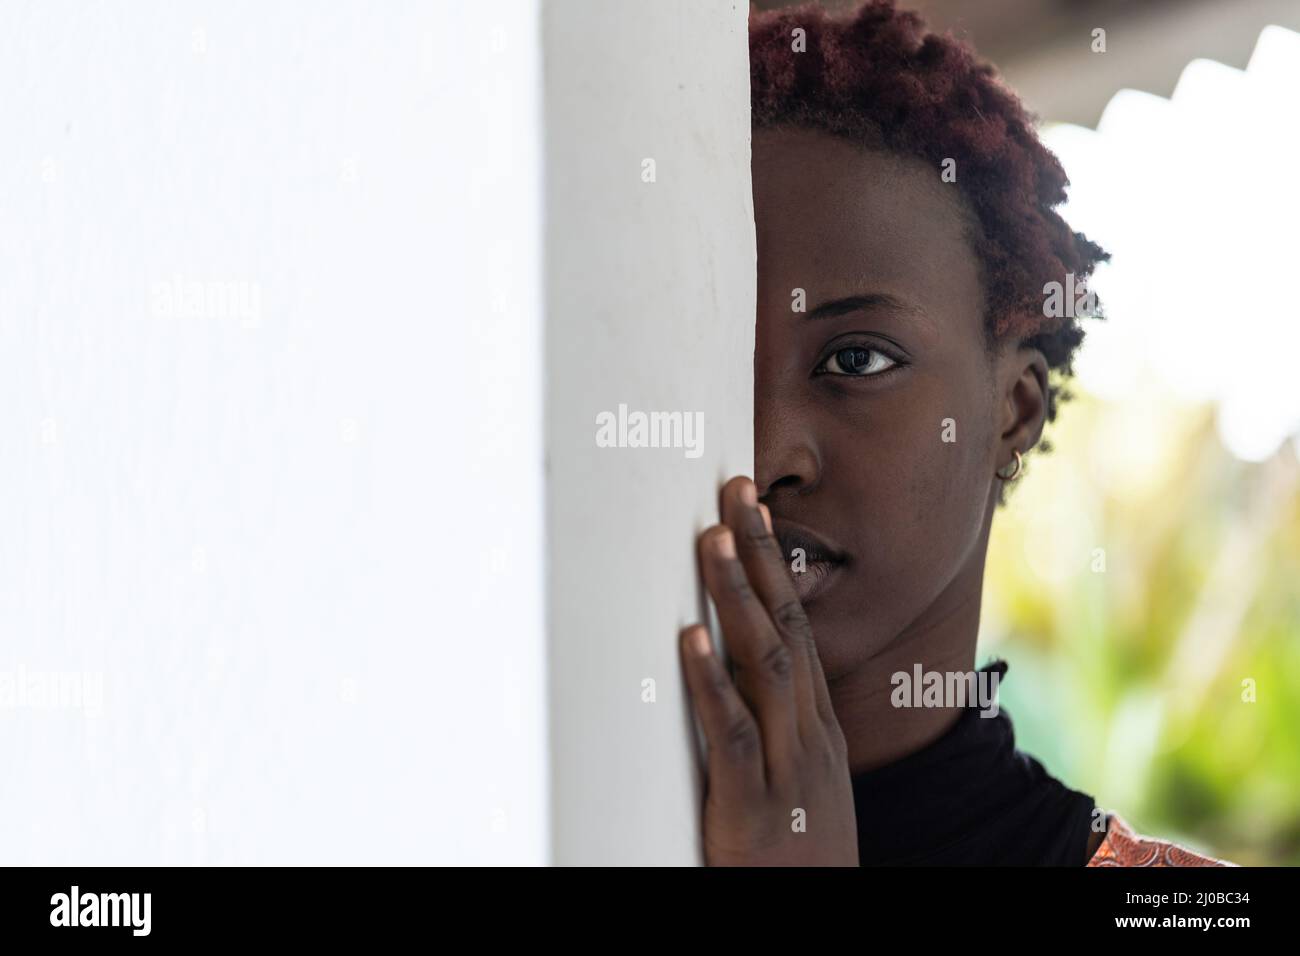 Halbgesichtsporträt eines schönen jungen afrikanischen Mädchens mit kurzen lockigen Haaren und einem nachdenklichen Gesichtsausdruck, der sich an eine Wand lehnt Stockfoto